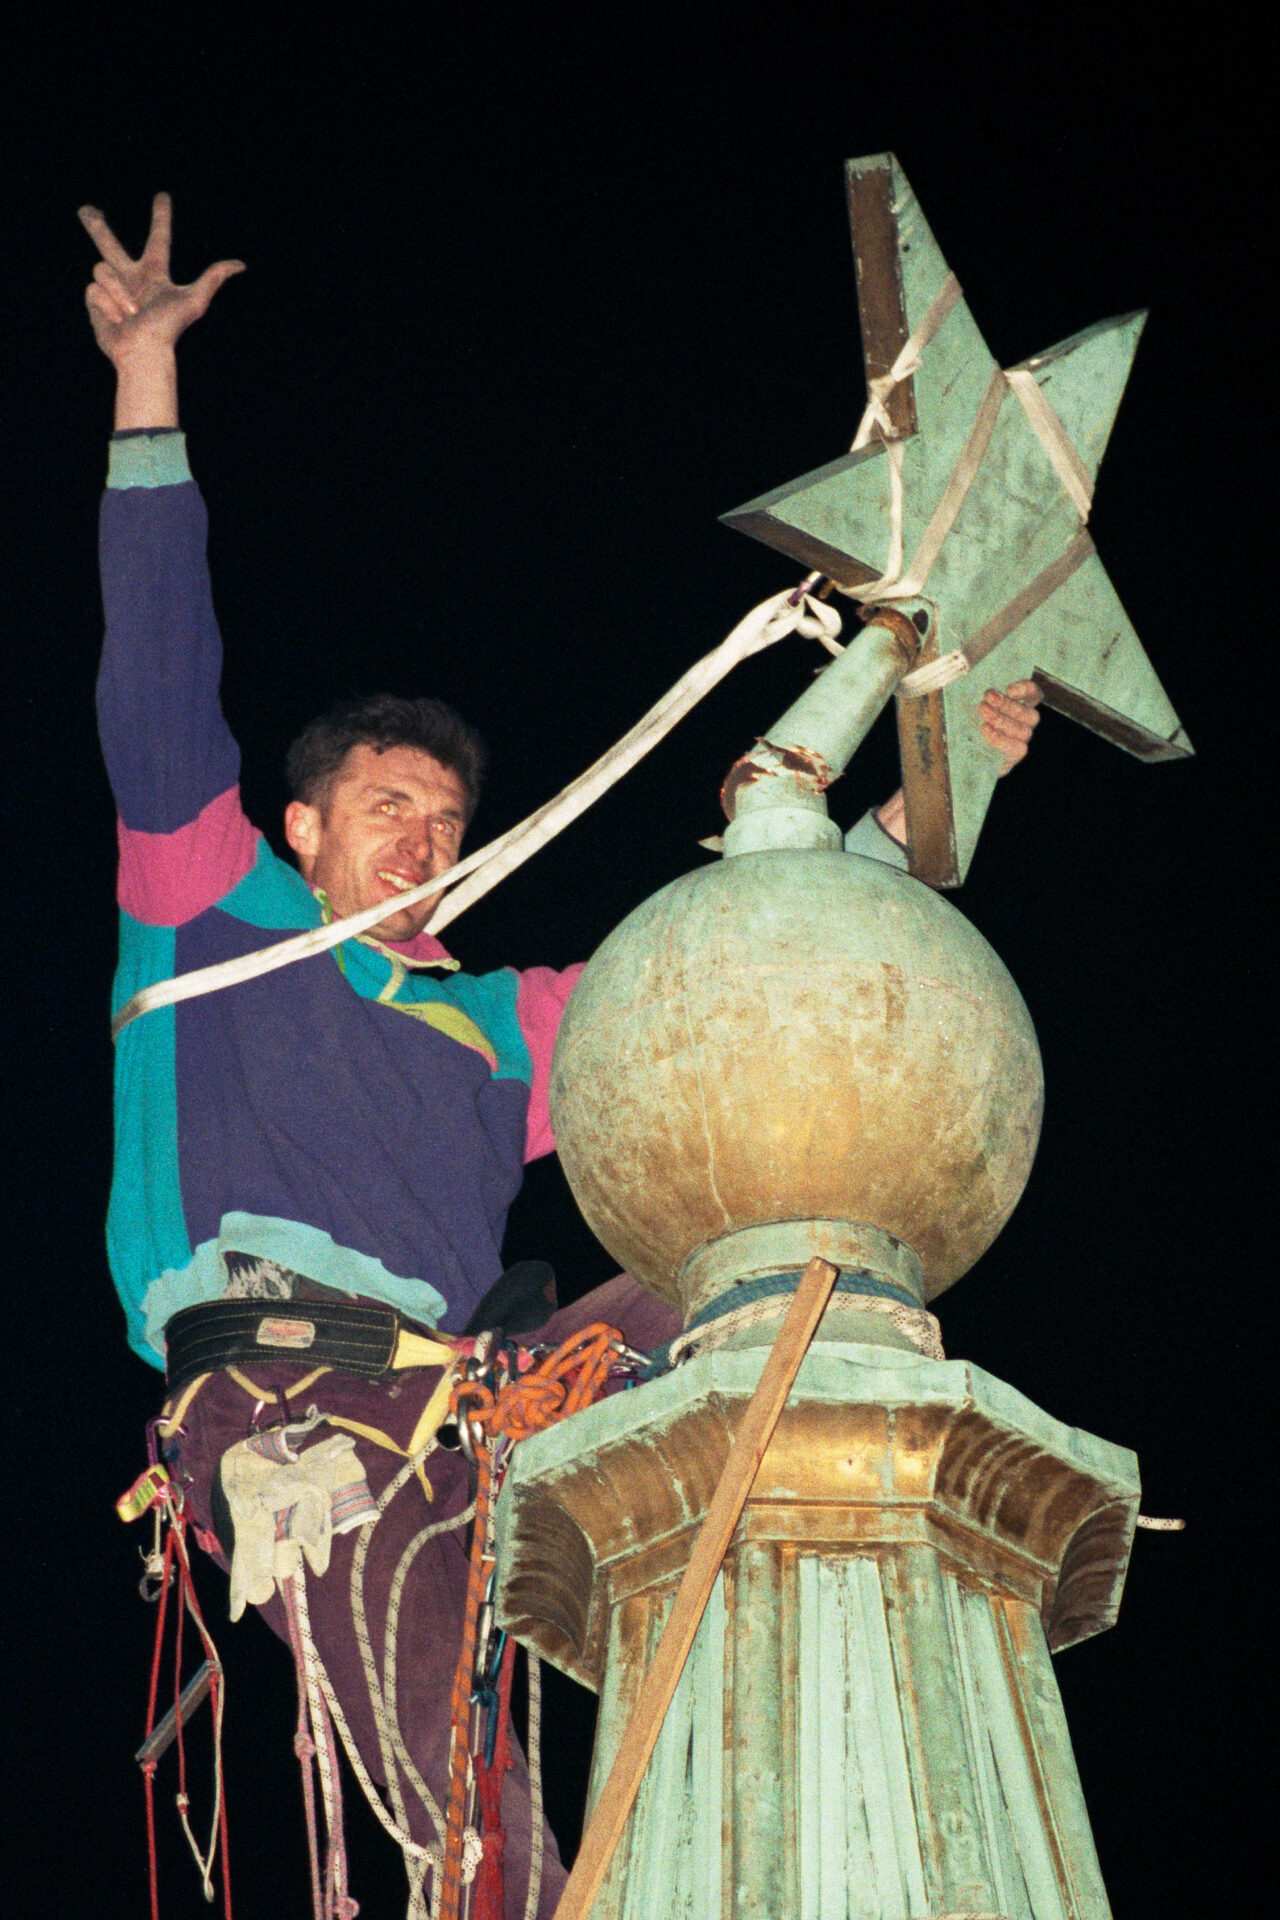 Skidanje zvezde petokrake sa Skupštine grada Beograda od strane alpinista 21 Feb 1997 Fotografija Srđan Ilić, eksponat iz Muzeja Jugoslavije